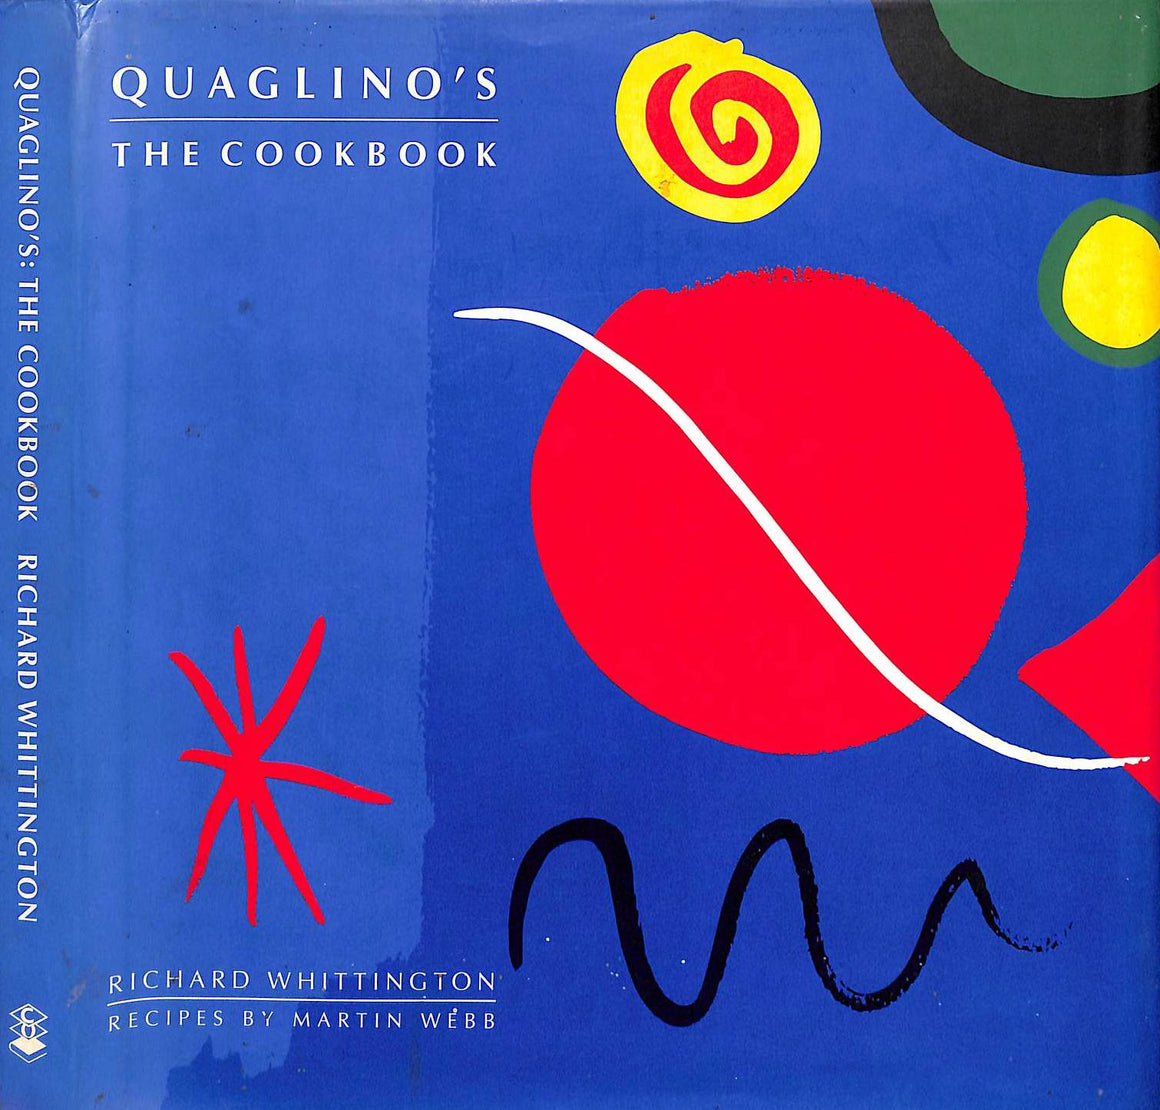 "Quaglino's The Cookbook" 1995 WHITTINGTON, Richard